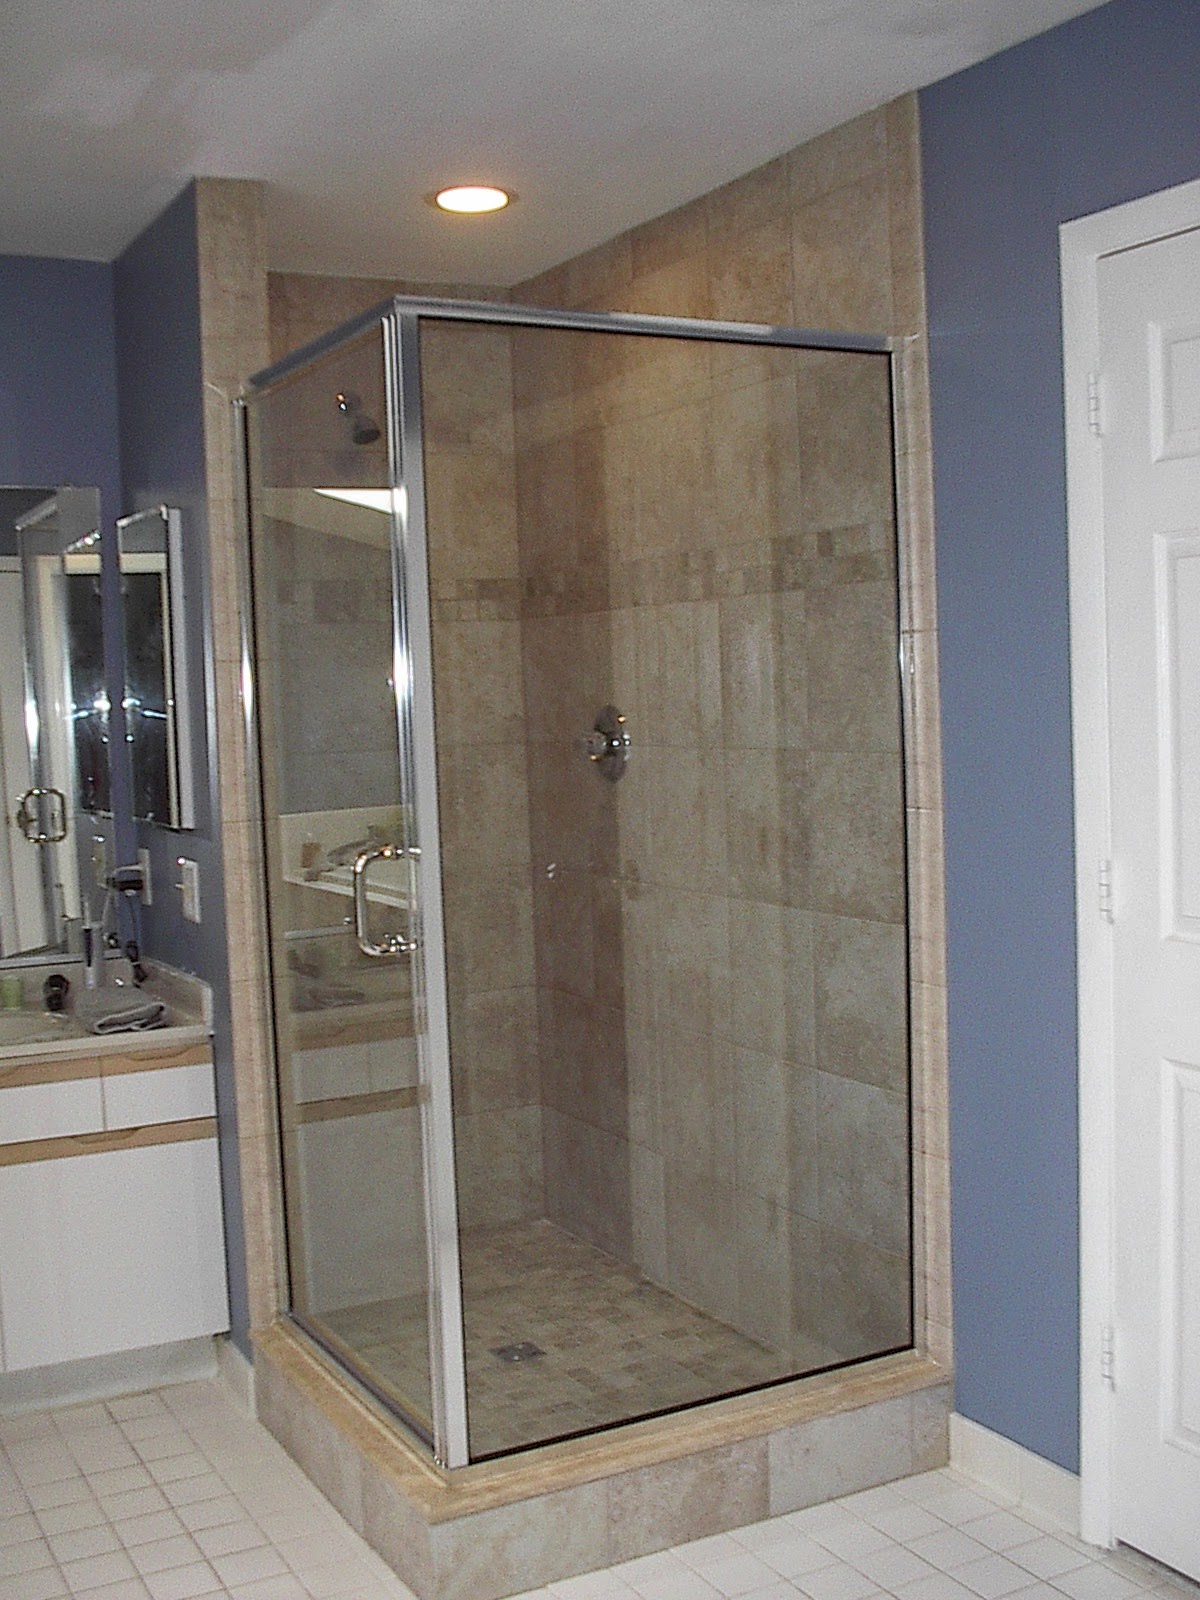 Bathroom remodel contractor vanity